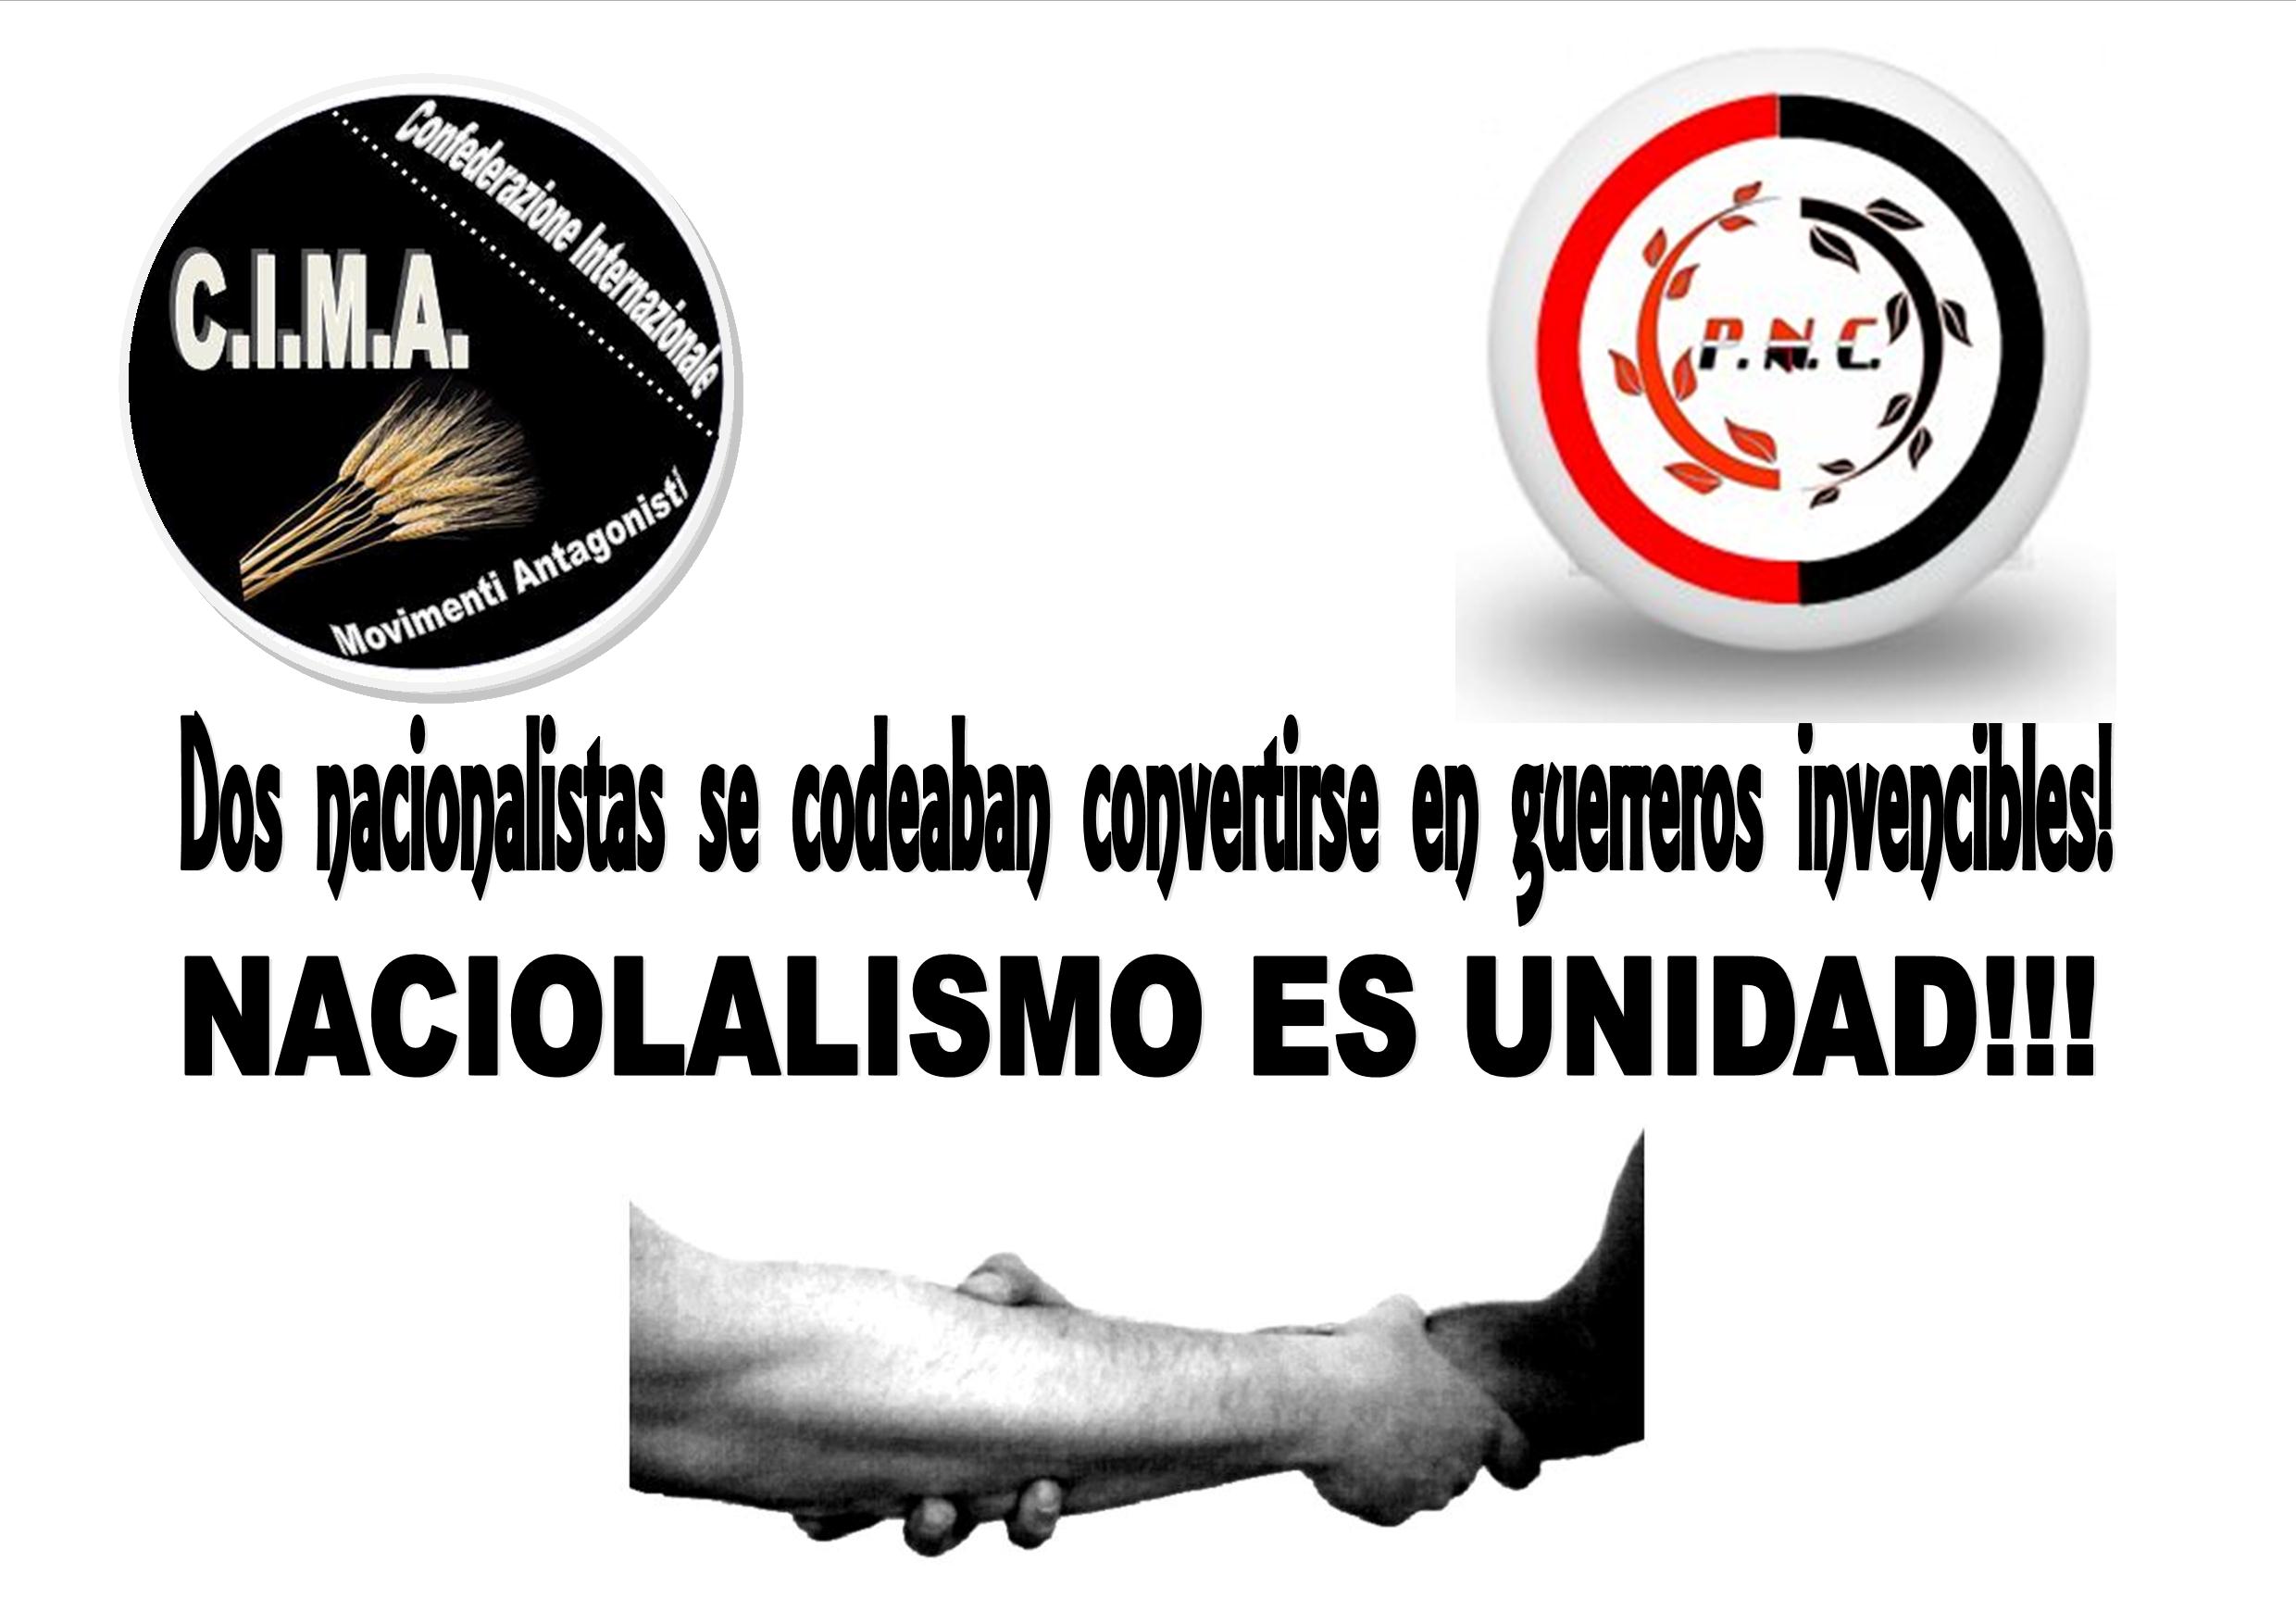 Il Cima sigla patto di collaborazione con il Partido Nacionalista Colombiano